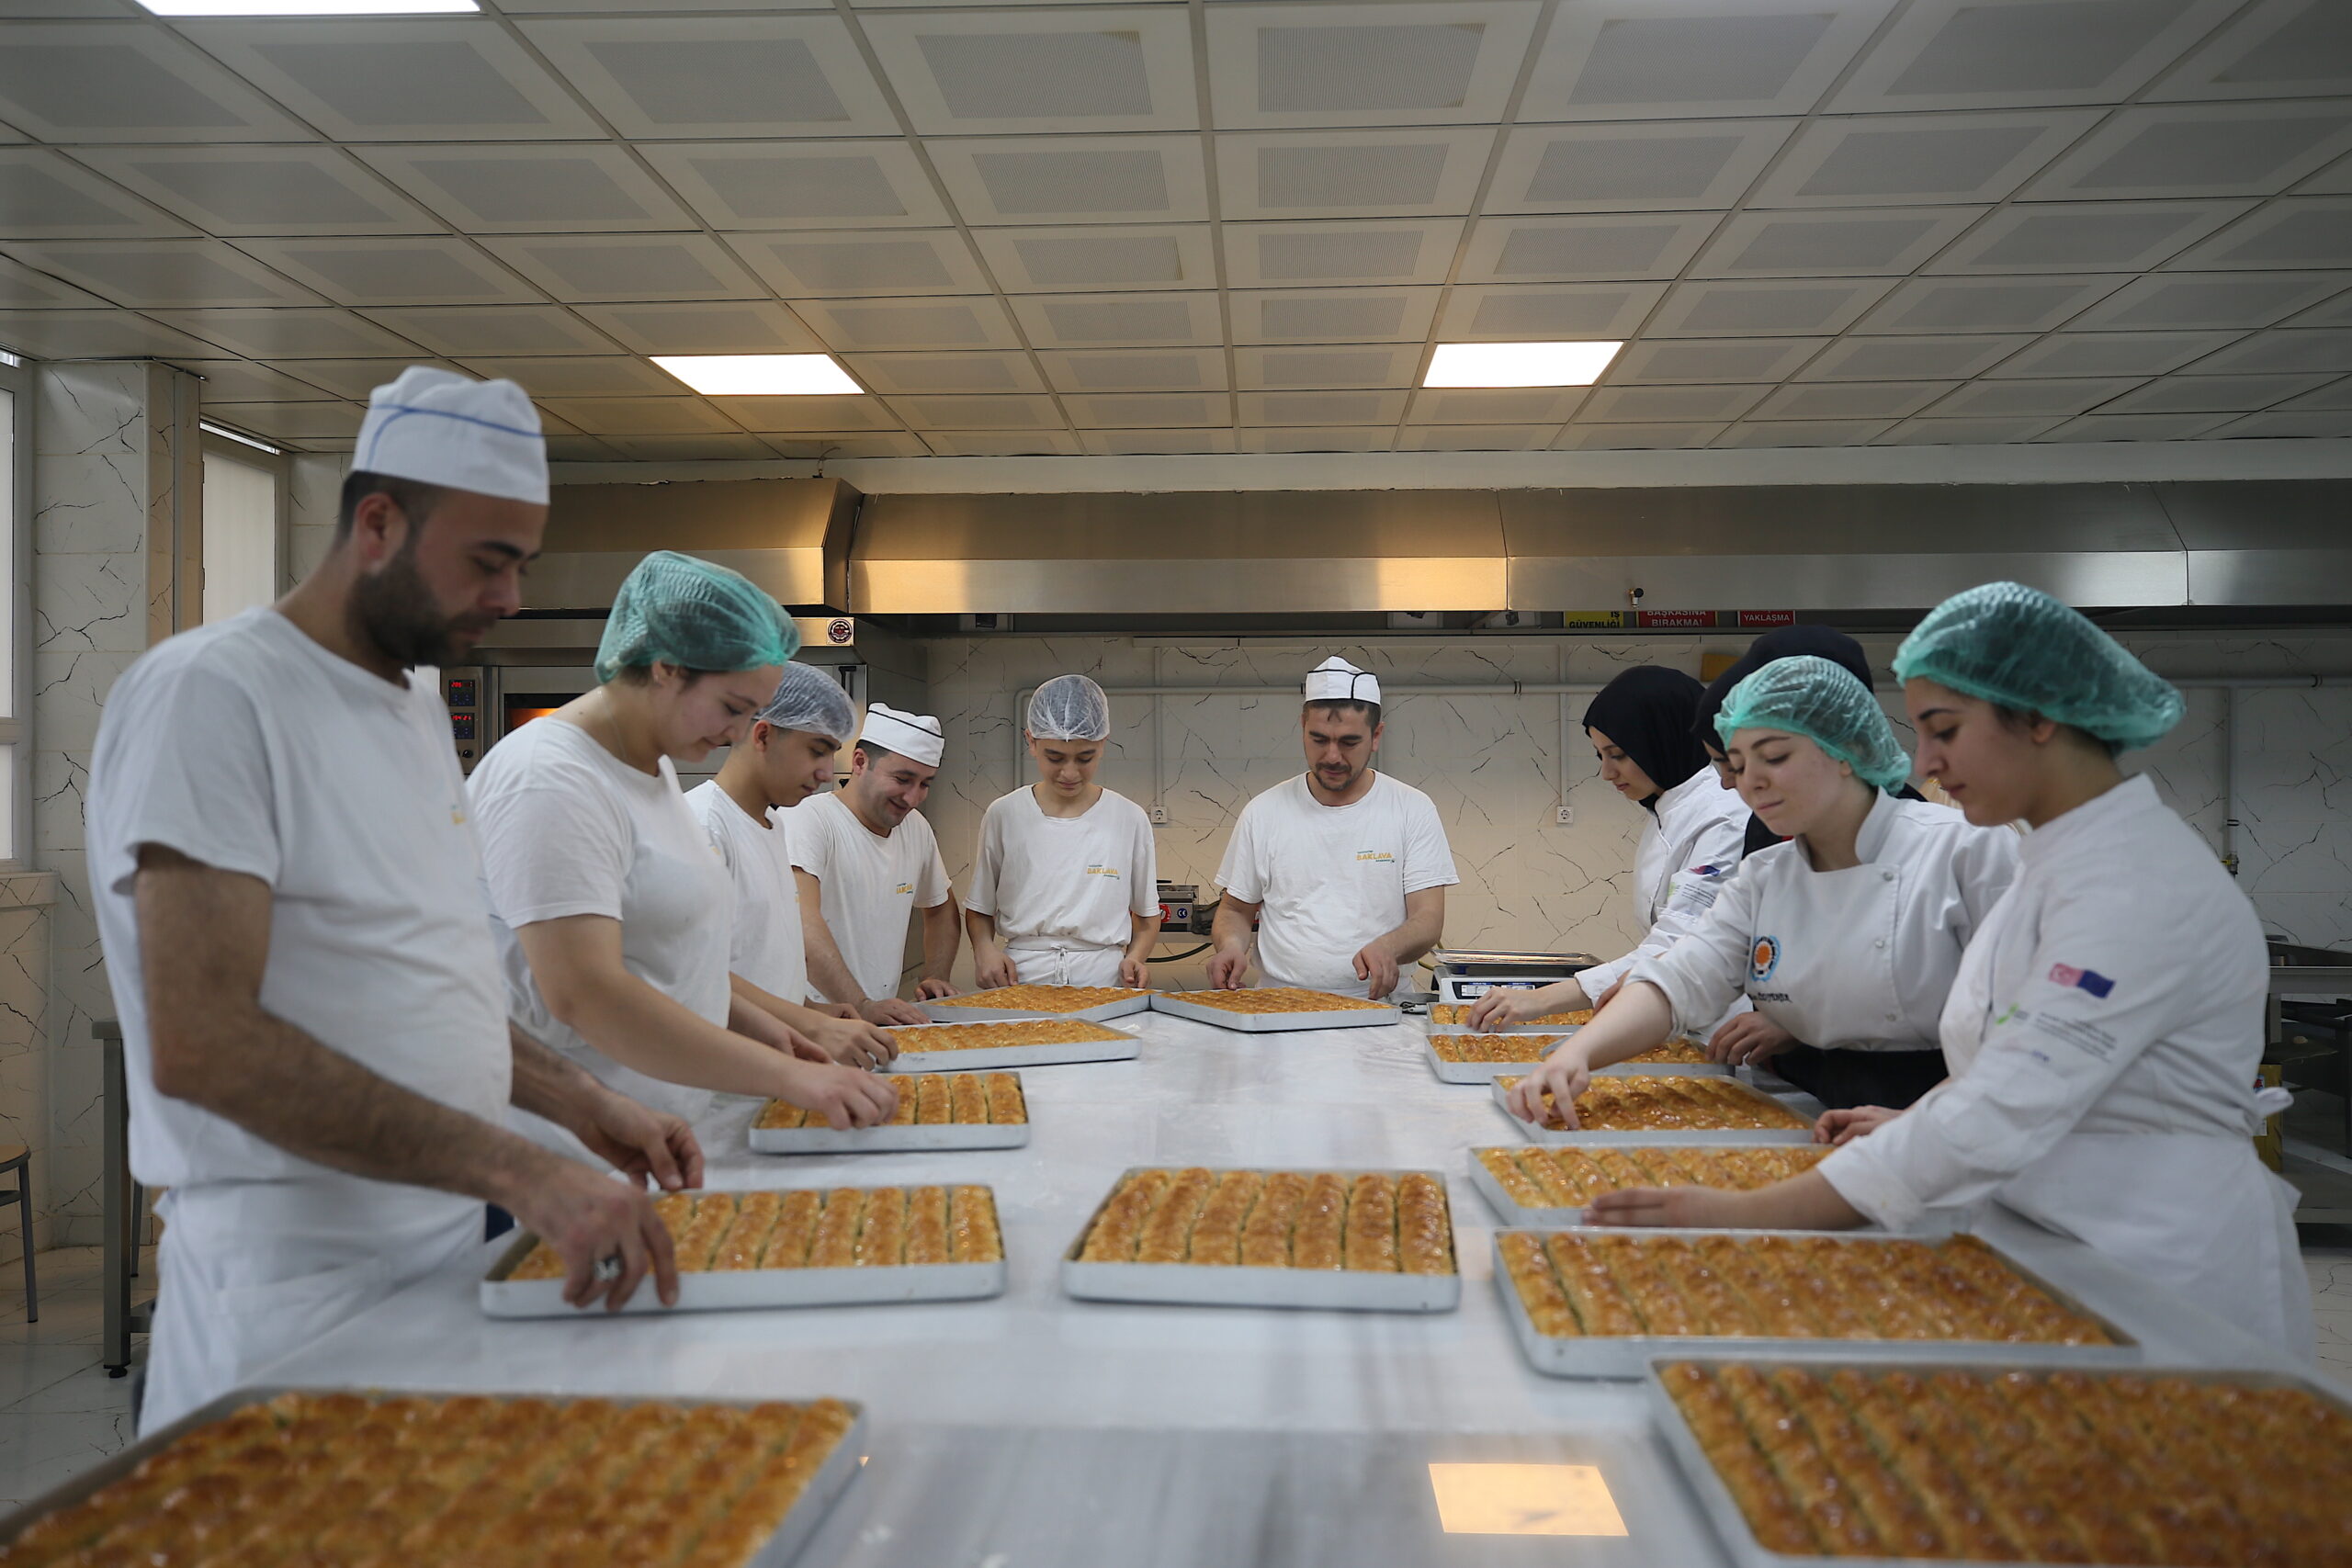 Gastronomi şehrinin liseli baklava üreticileri okula 1 yılda 4 milyon lira gelir sağladı